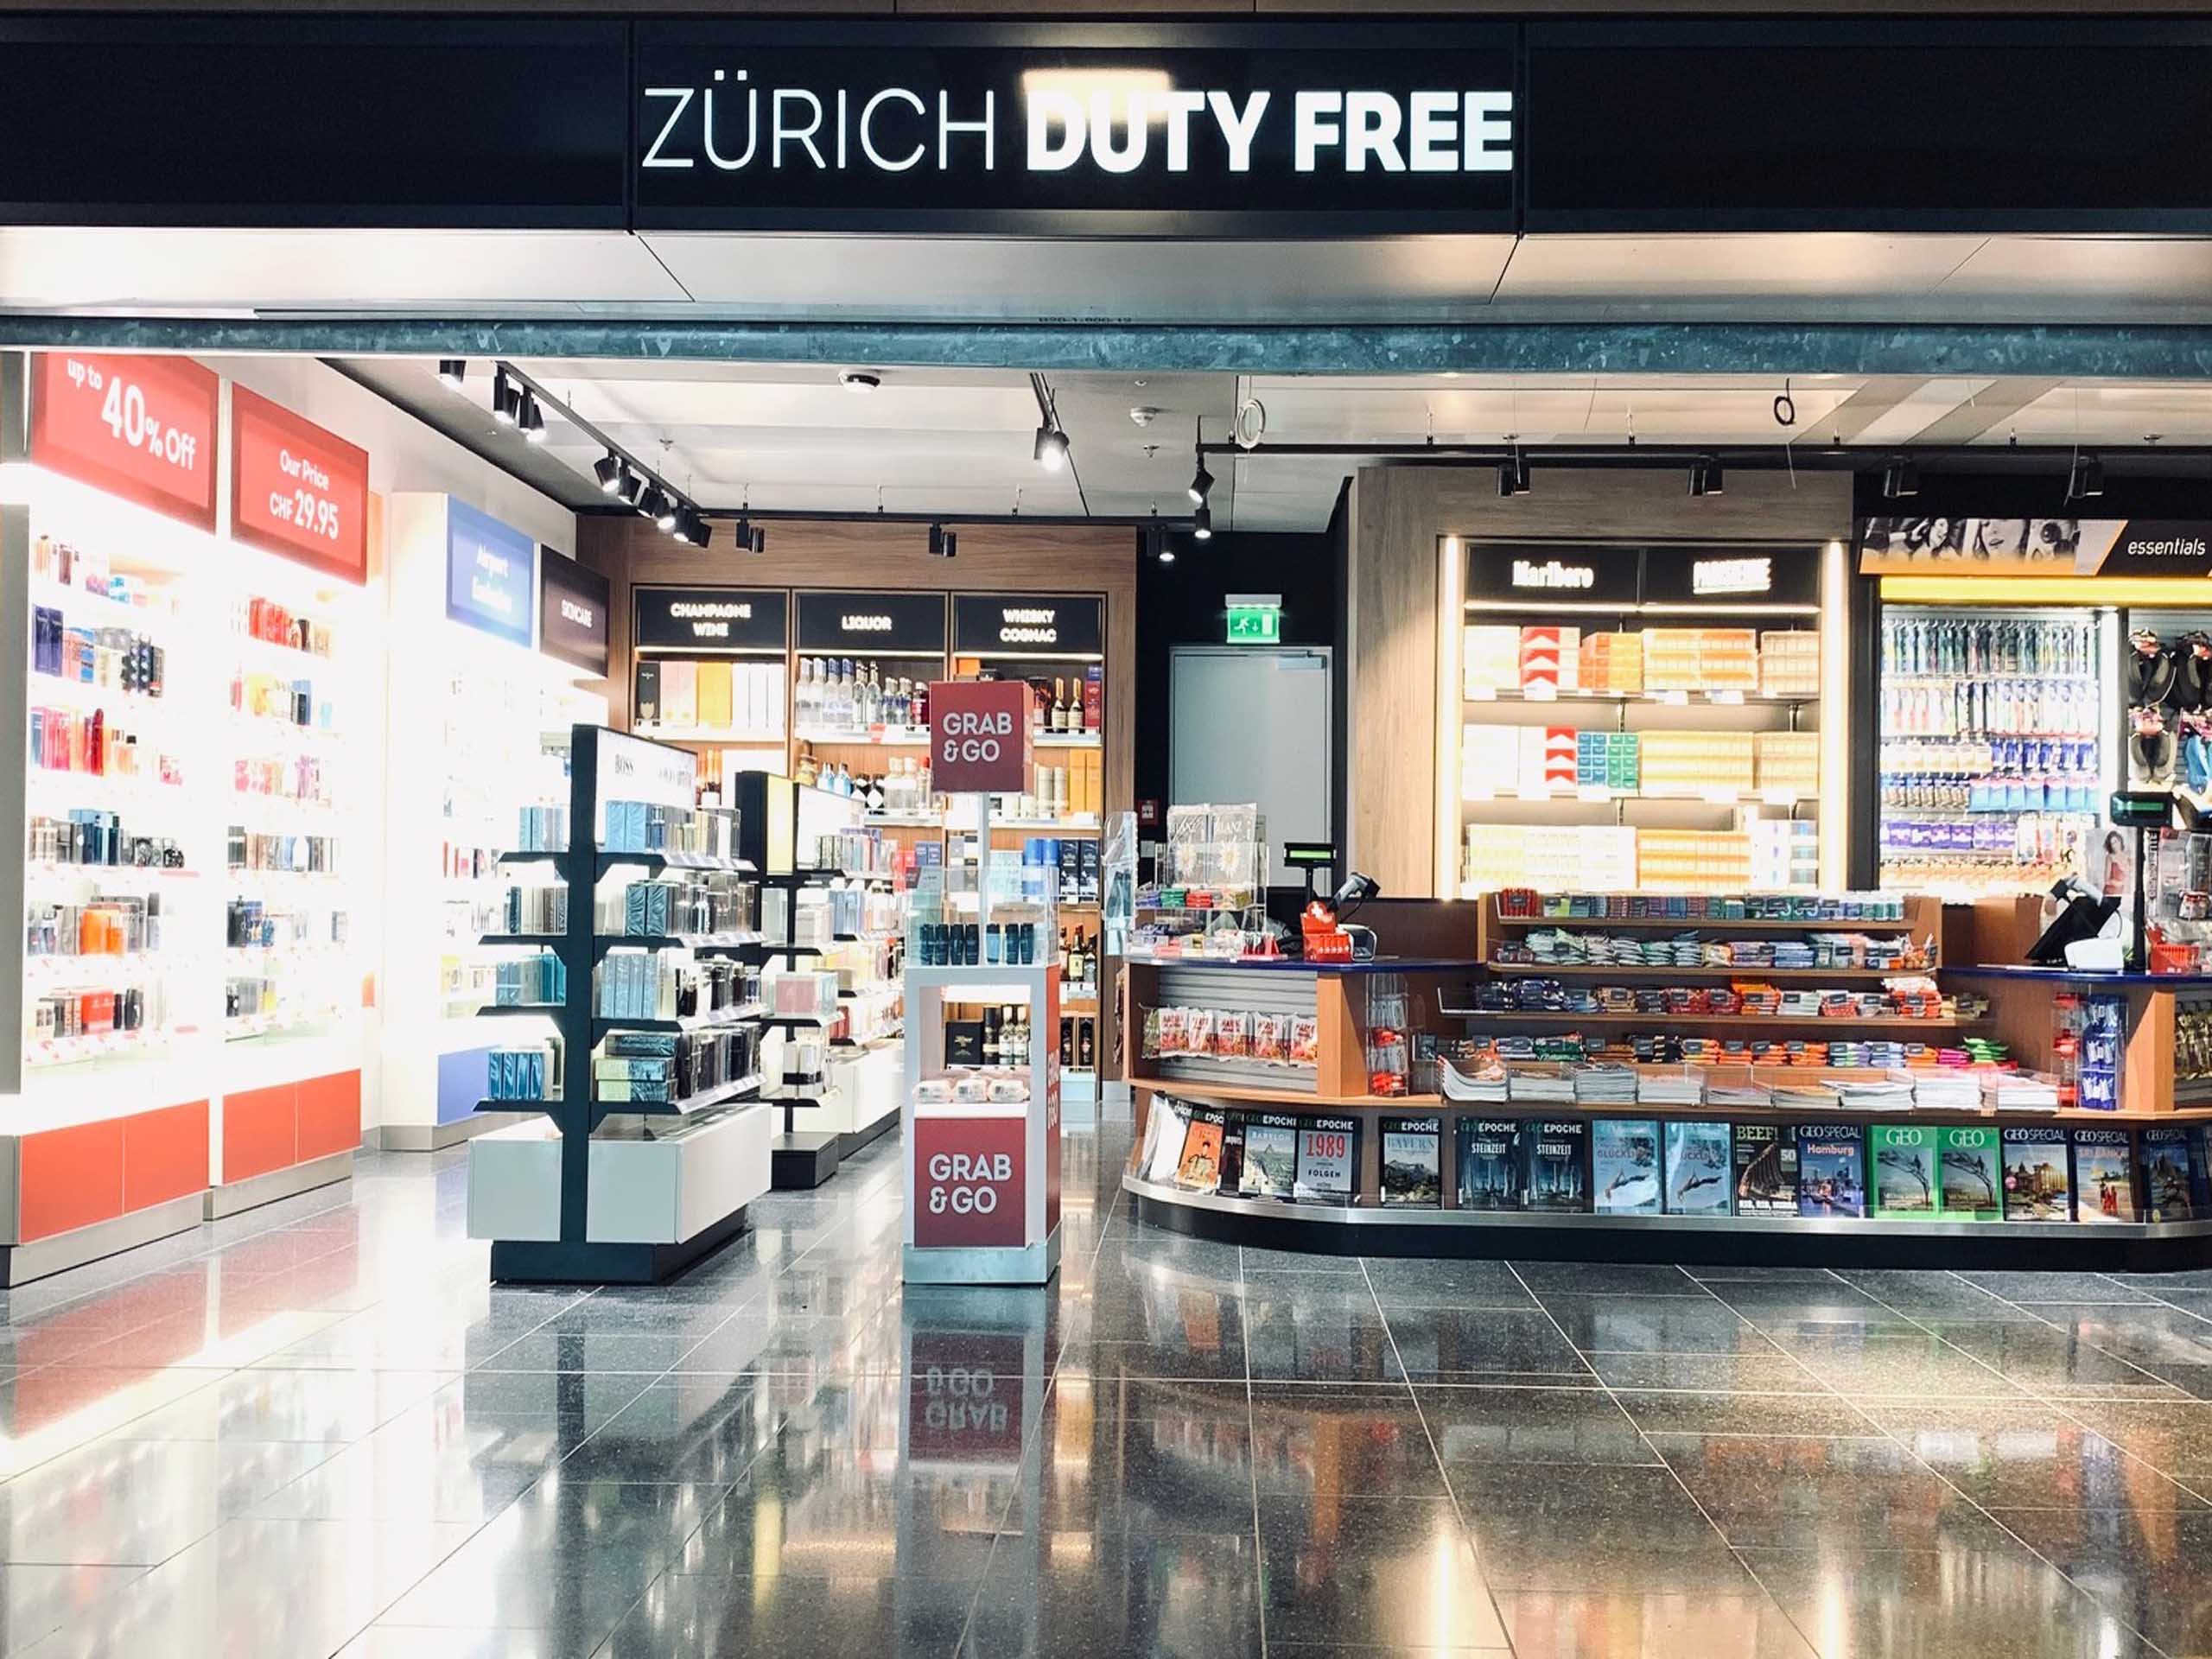 Zurich Duty Free